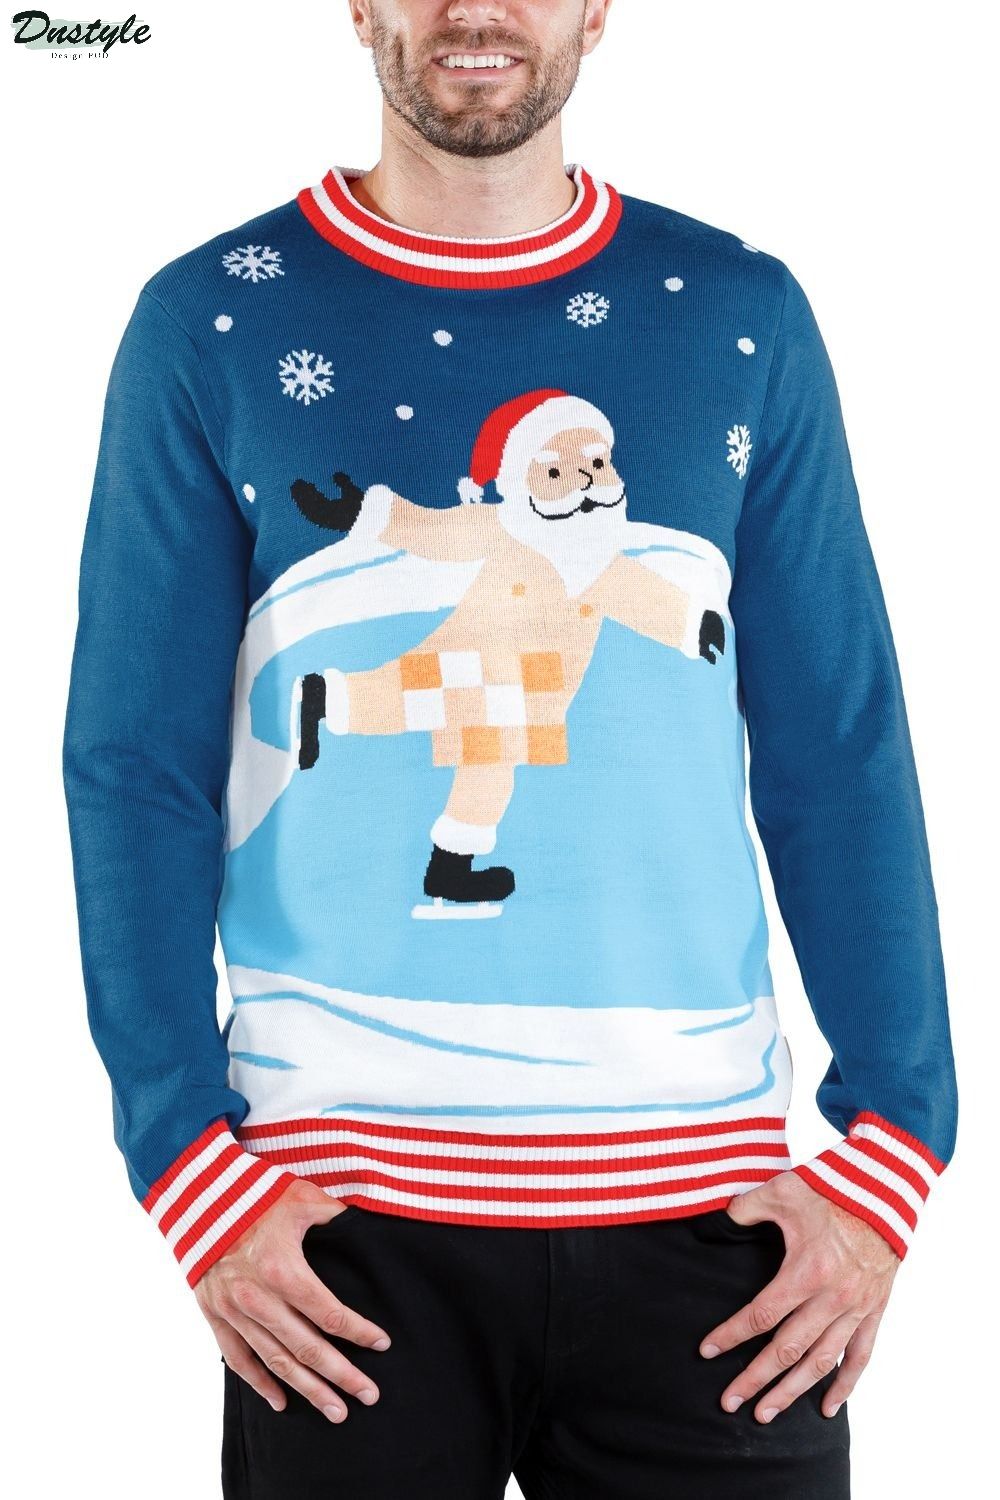 Censored Skater Ugly Christmas Sweater